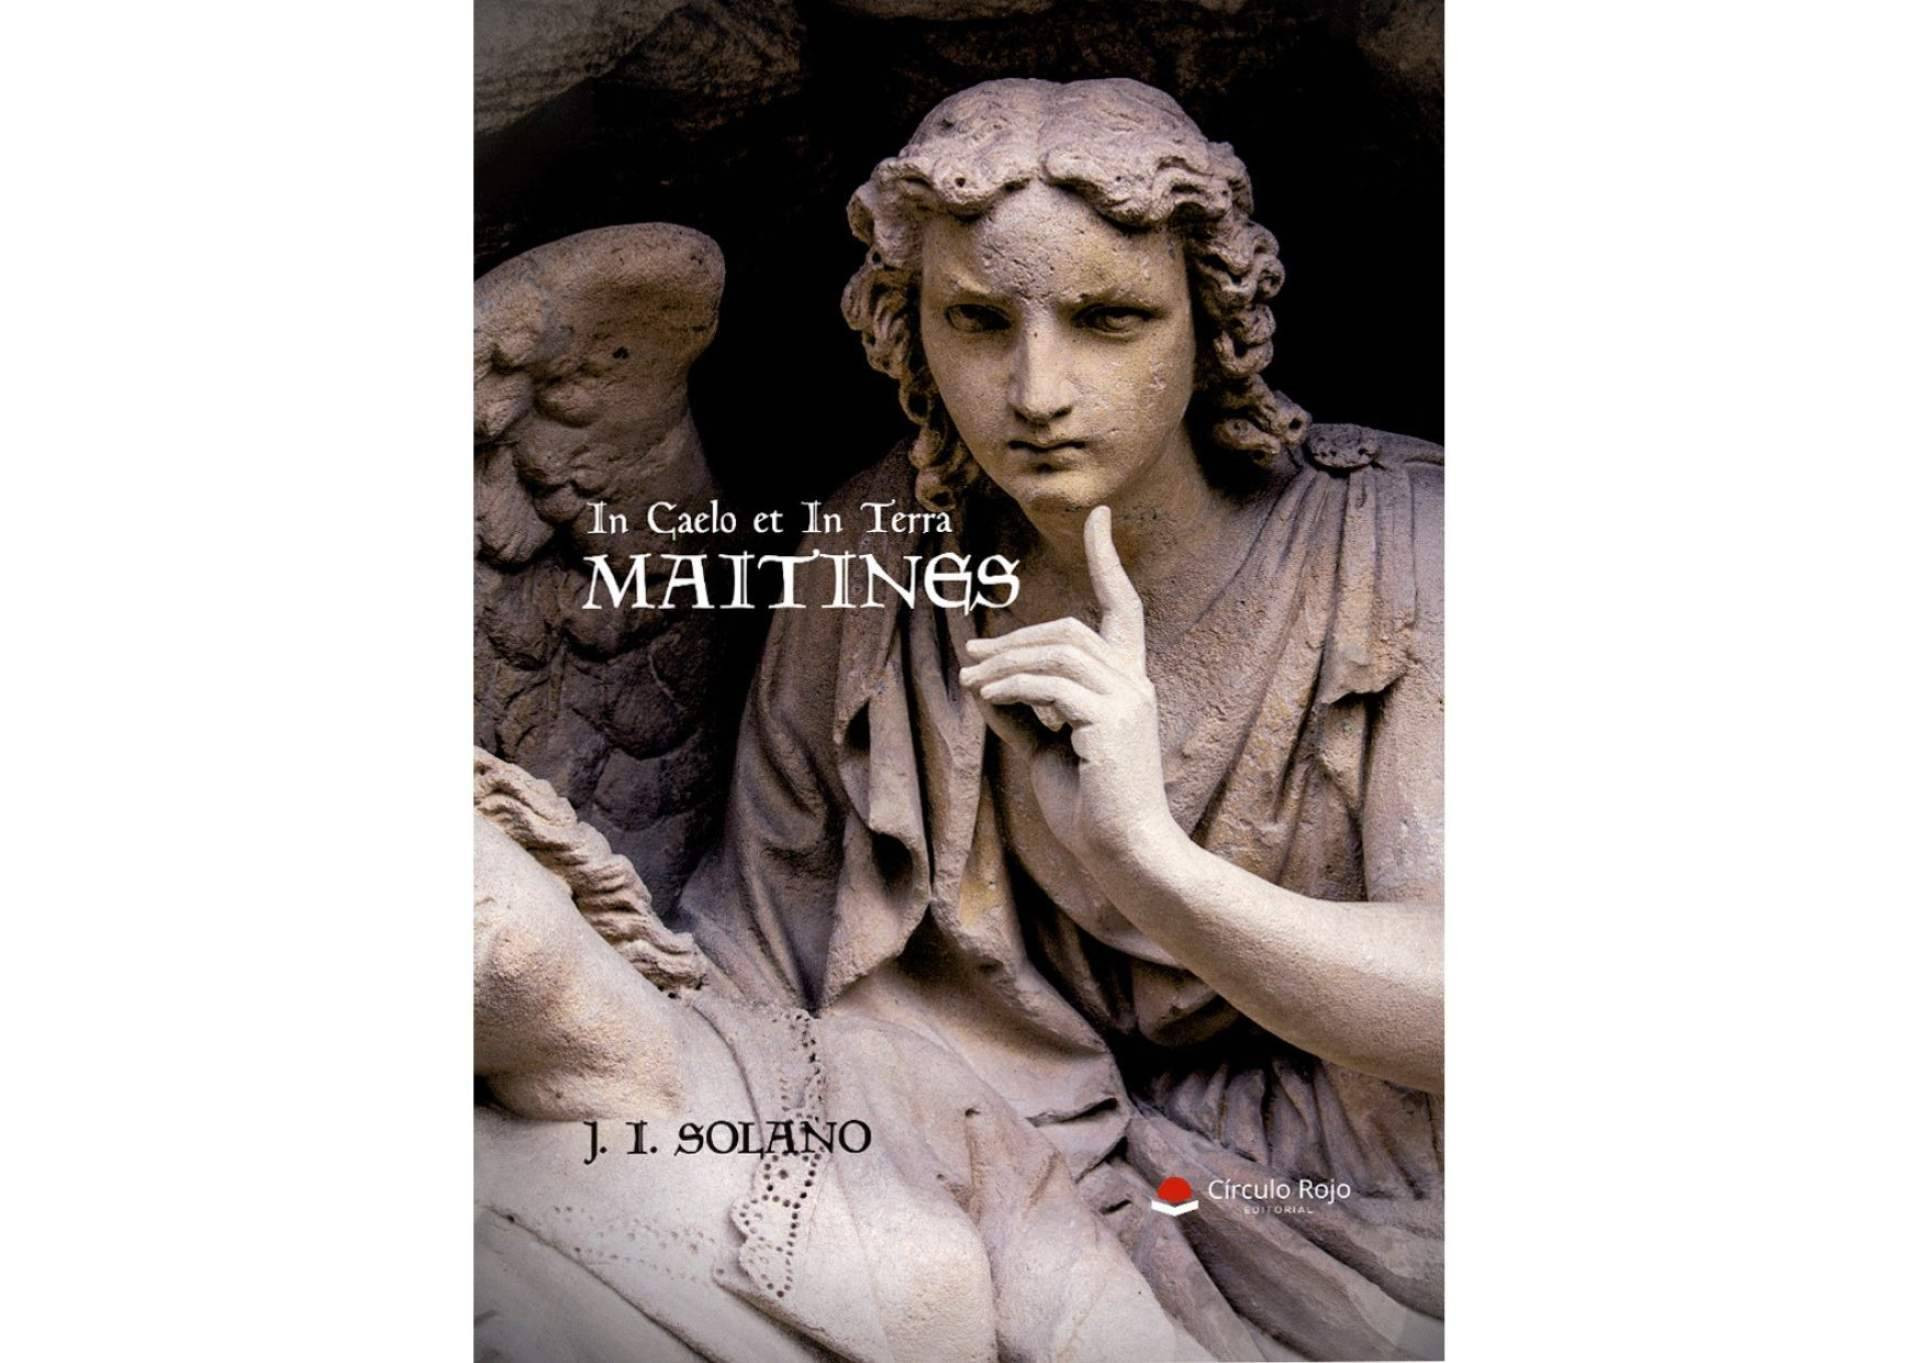  J. I. Solano publica ‘Maitines’, una obra ‘paranormal’ con un toque de ‘brujería’ que sorprenderá al lector 